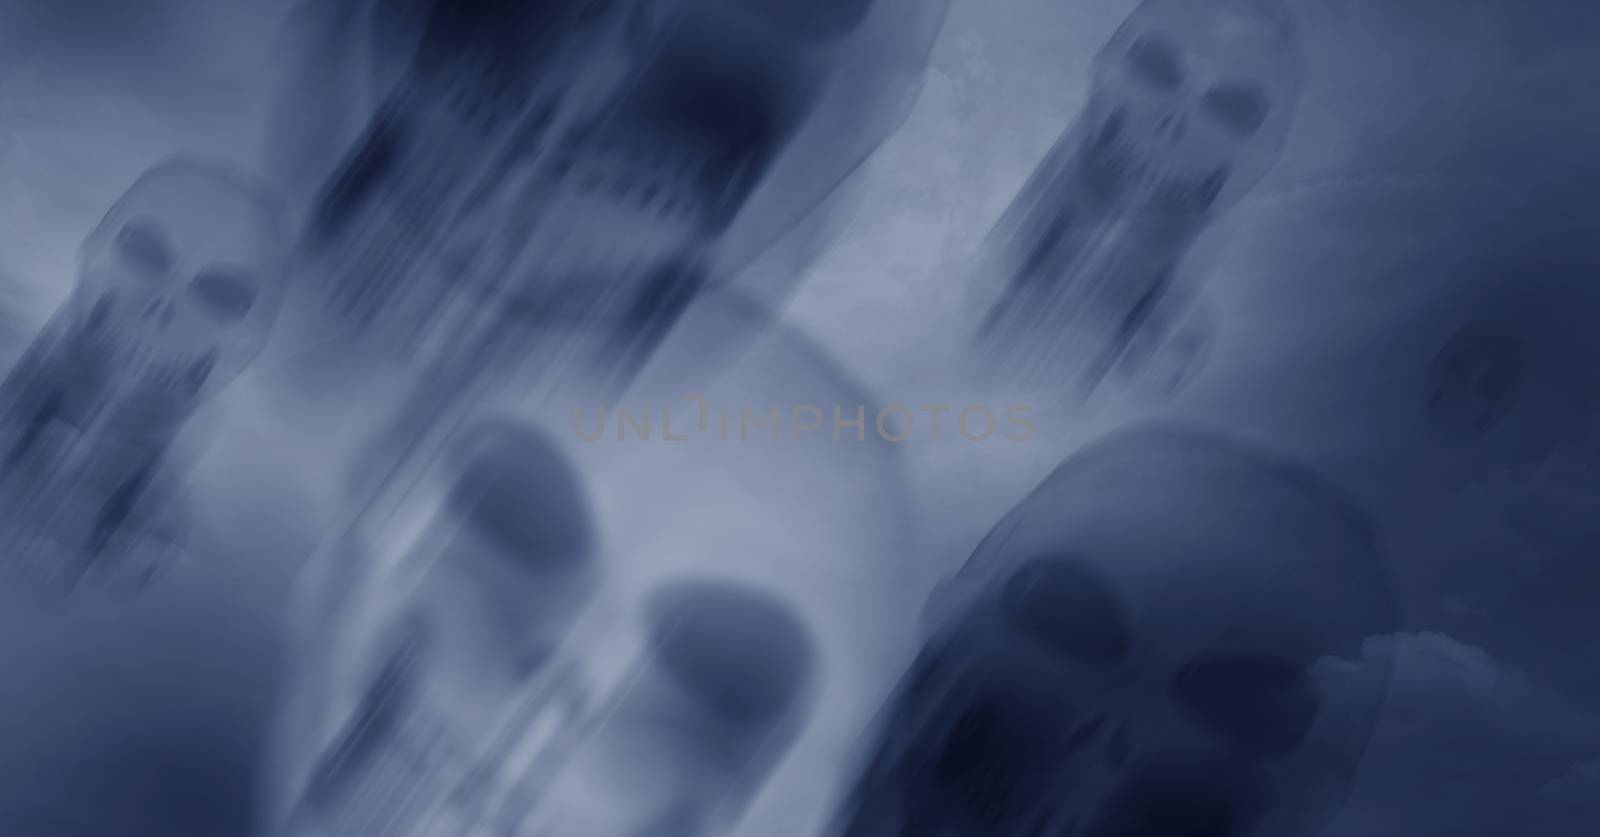 Skull flying in dark sky for Halloween background. by pandpstock_002